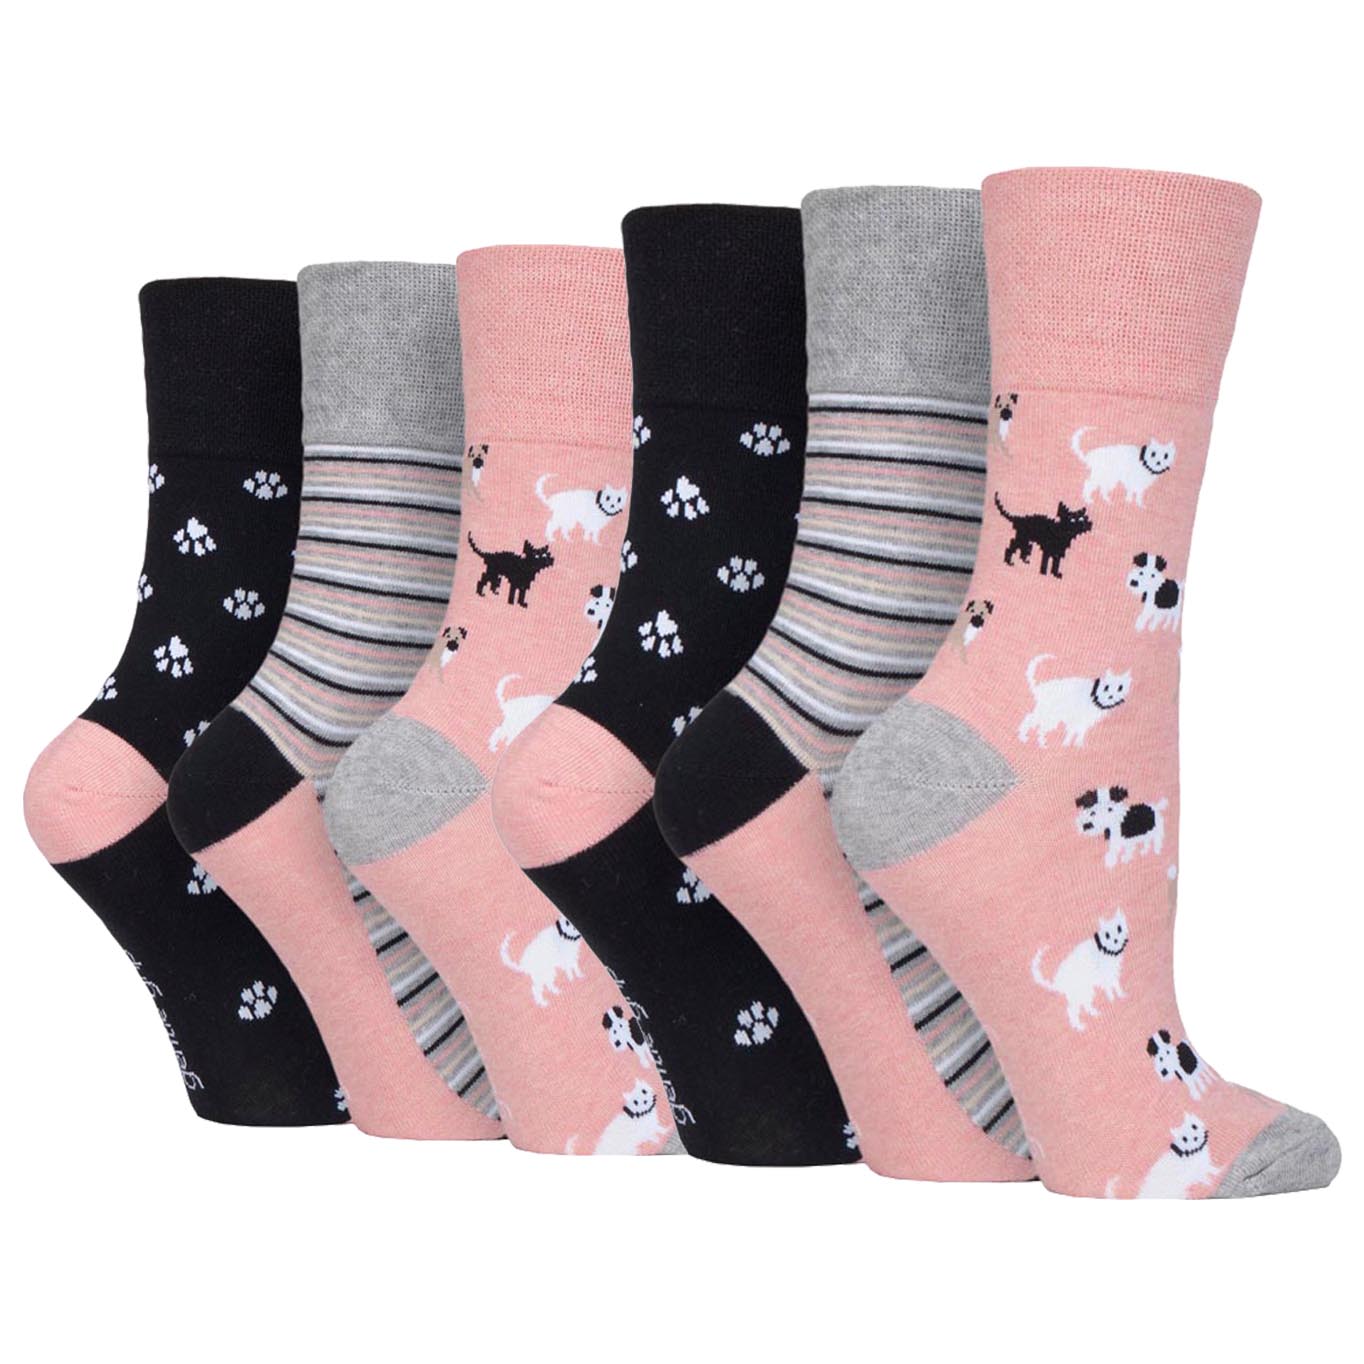 6 Pairs Ladies Gentle Grip Cotton Socks Fun Feet Pets